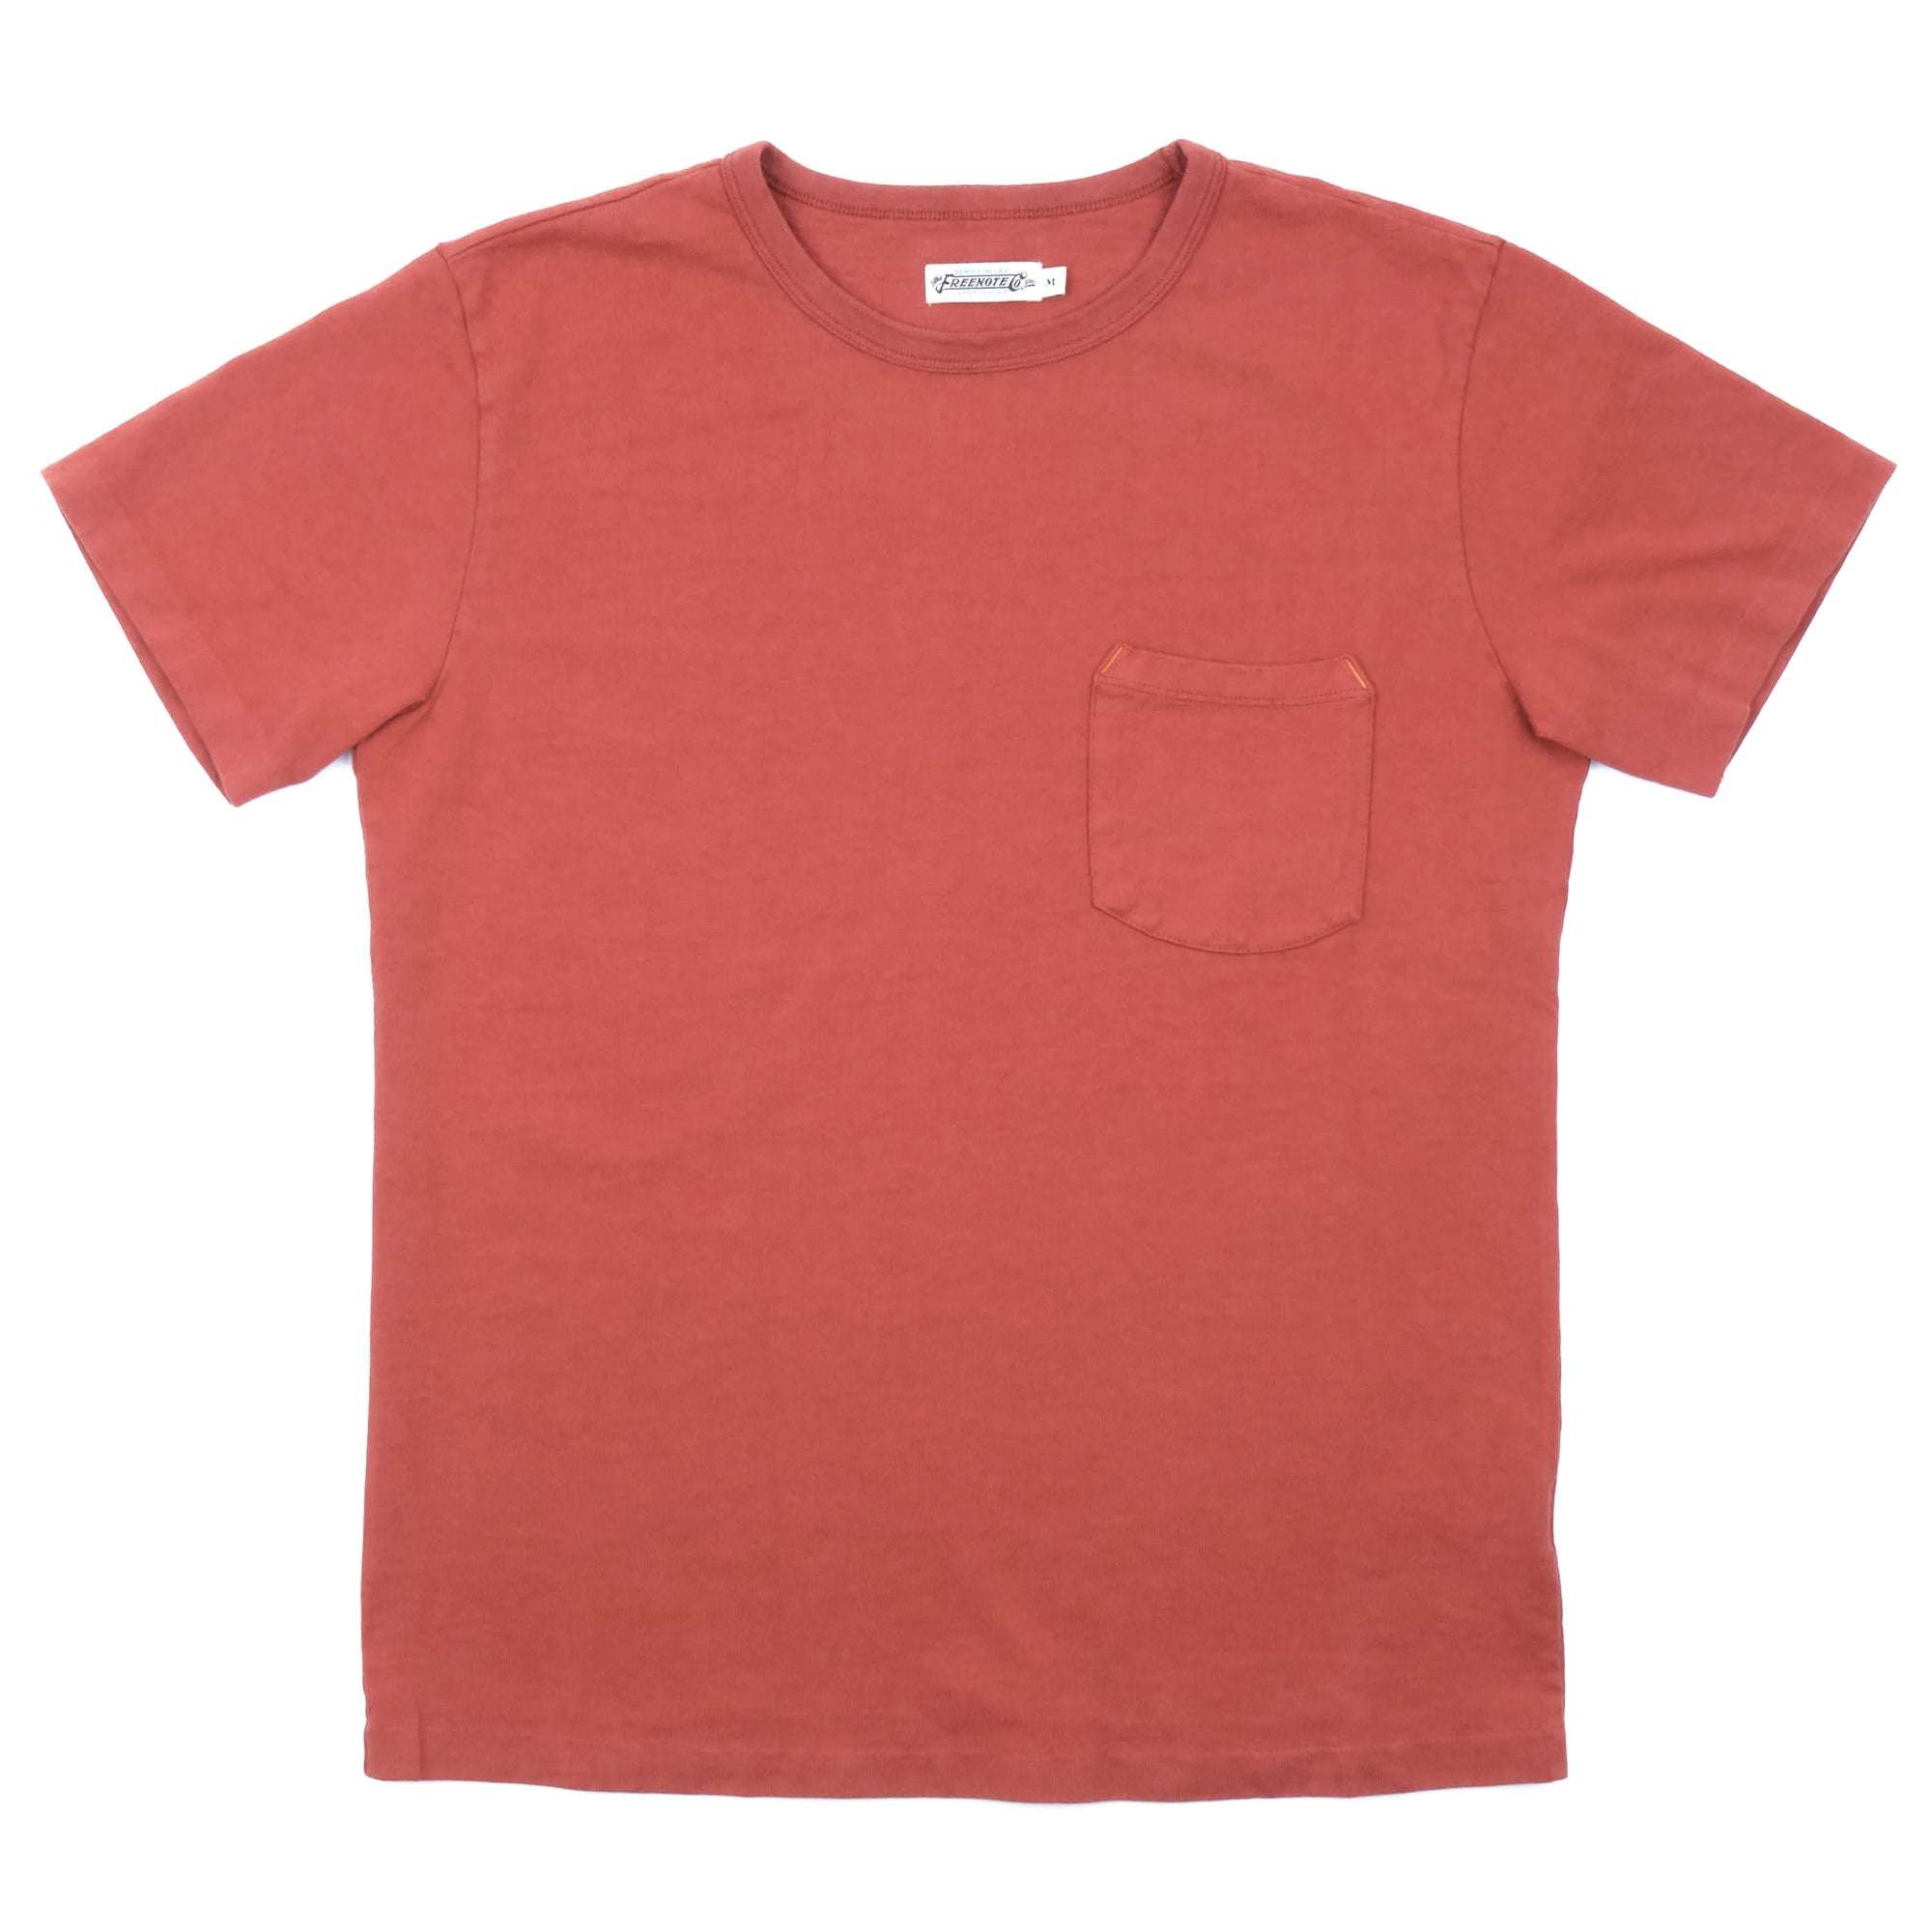 Freenote Cloth 13oz Pocket T-Shirt - Picante